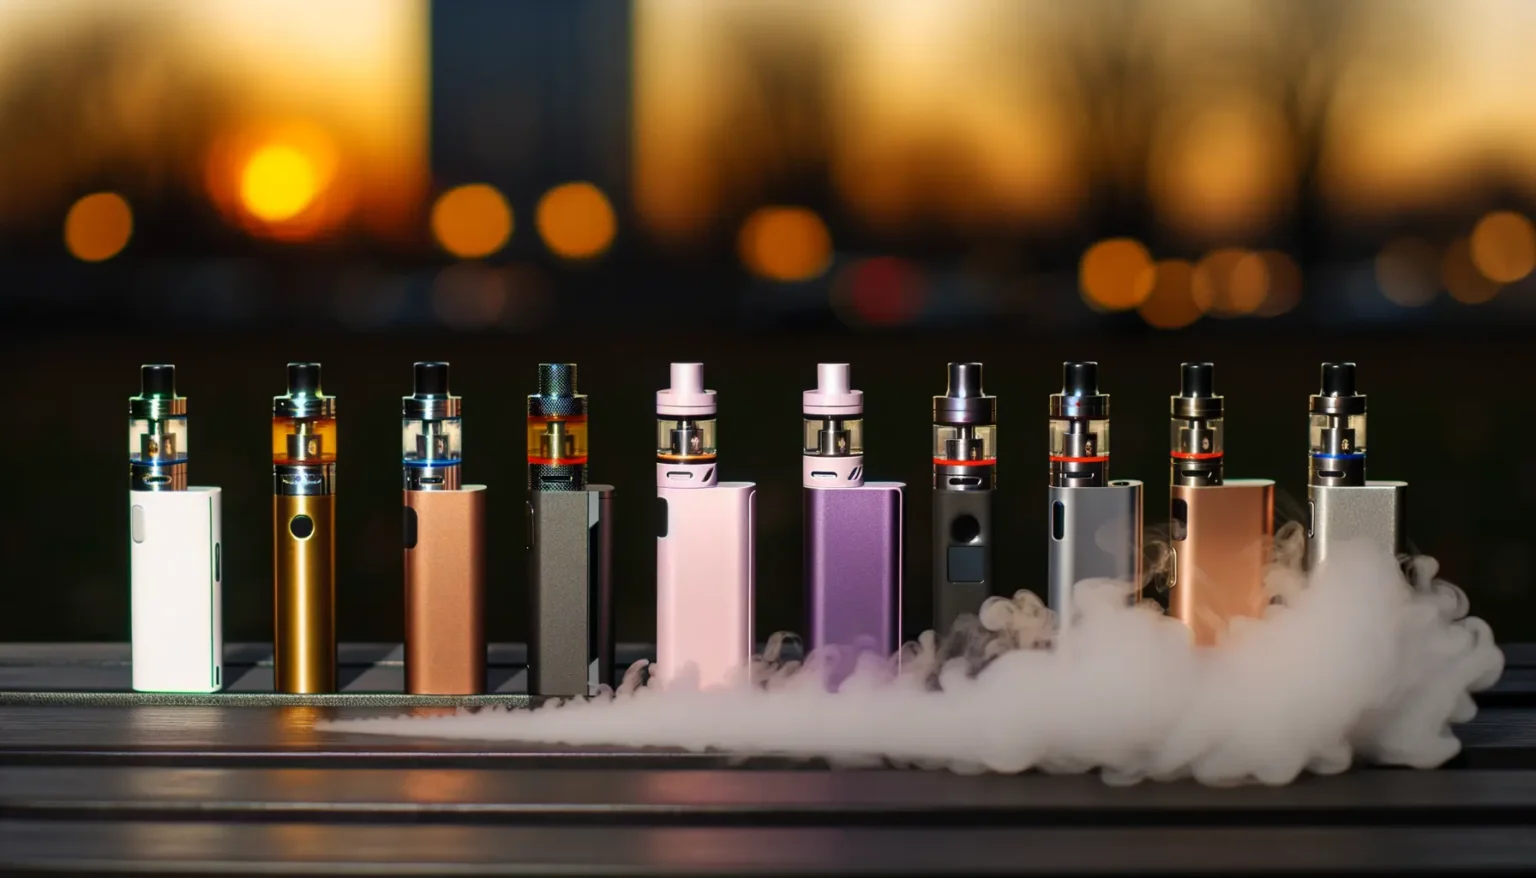 Eine Sammlung verschiedener E-Zigaretten und Vape Pens in unterschiedlichen Farben und Designs, aufgereiht auf einer Oberfläche, mit einem Rauchschwaden im Vordergrund und einem unscharfen Hintergrund mit warmen Lichtern, die vermutlich einer Stadtszene bei Sonnenuntergang entsprechen.